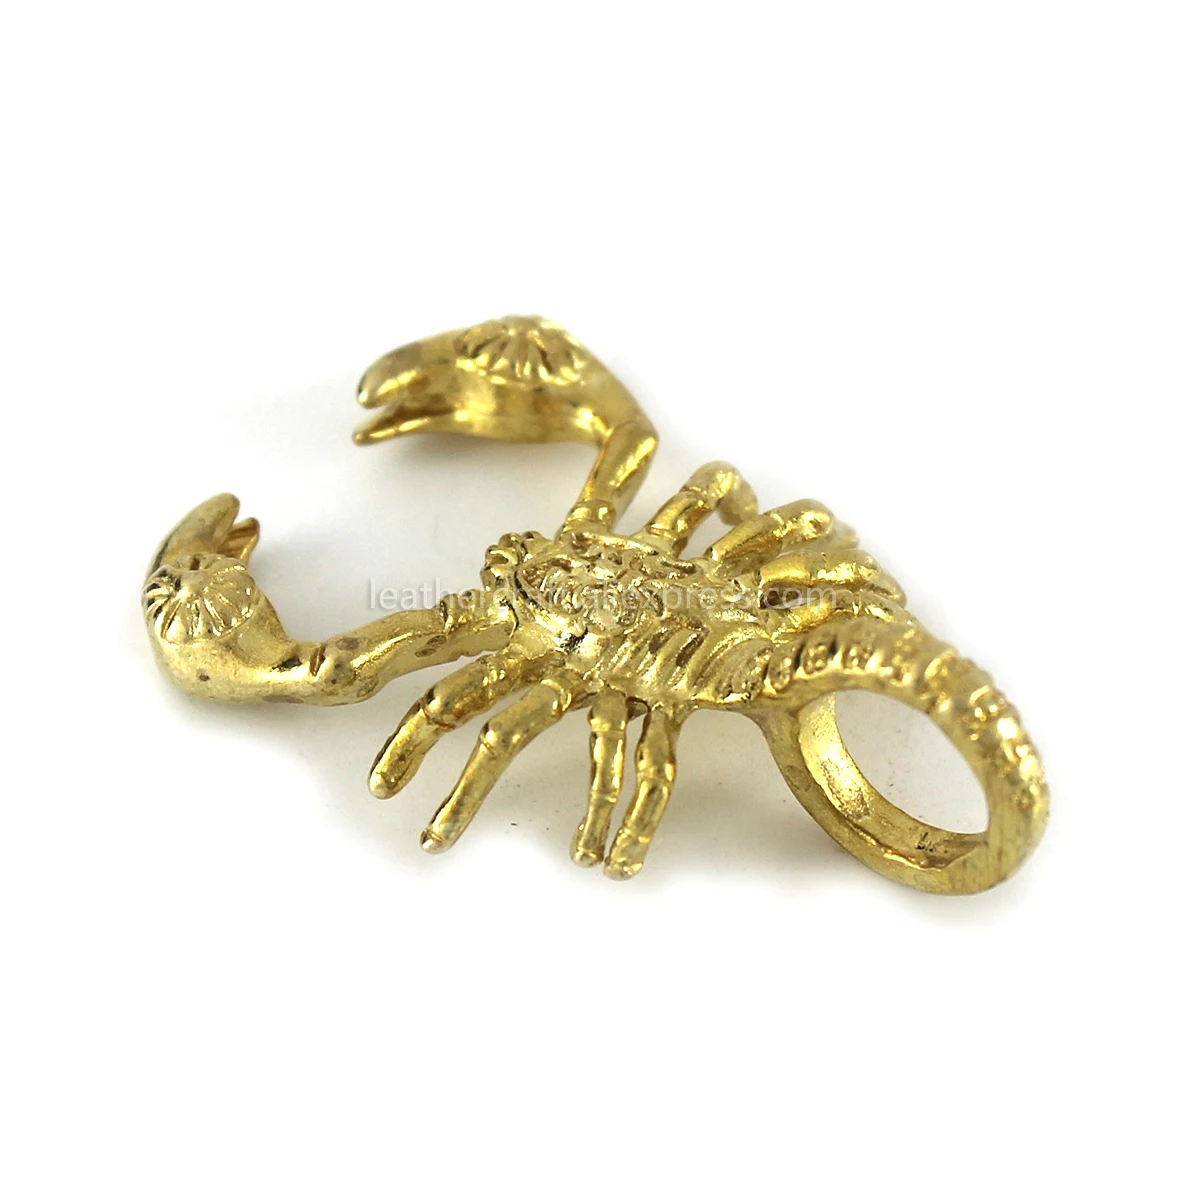 1 шт. латунные подвески Скорпион насекомое ожерелье ювелирные изделия Кожа ремесло сумка кошелек кожаный ремень украшения части